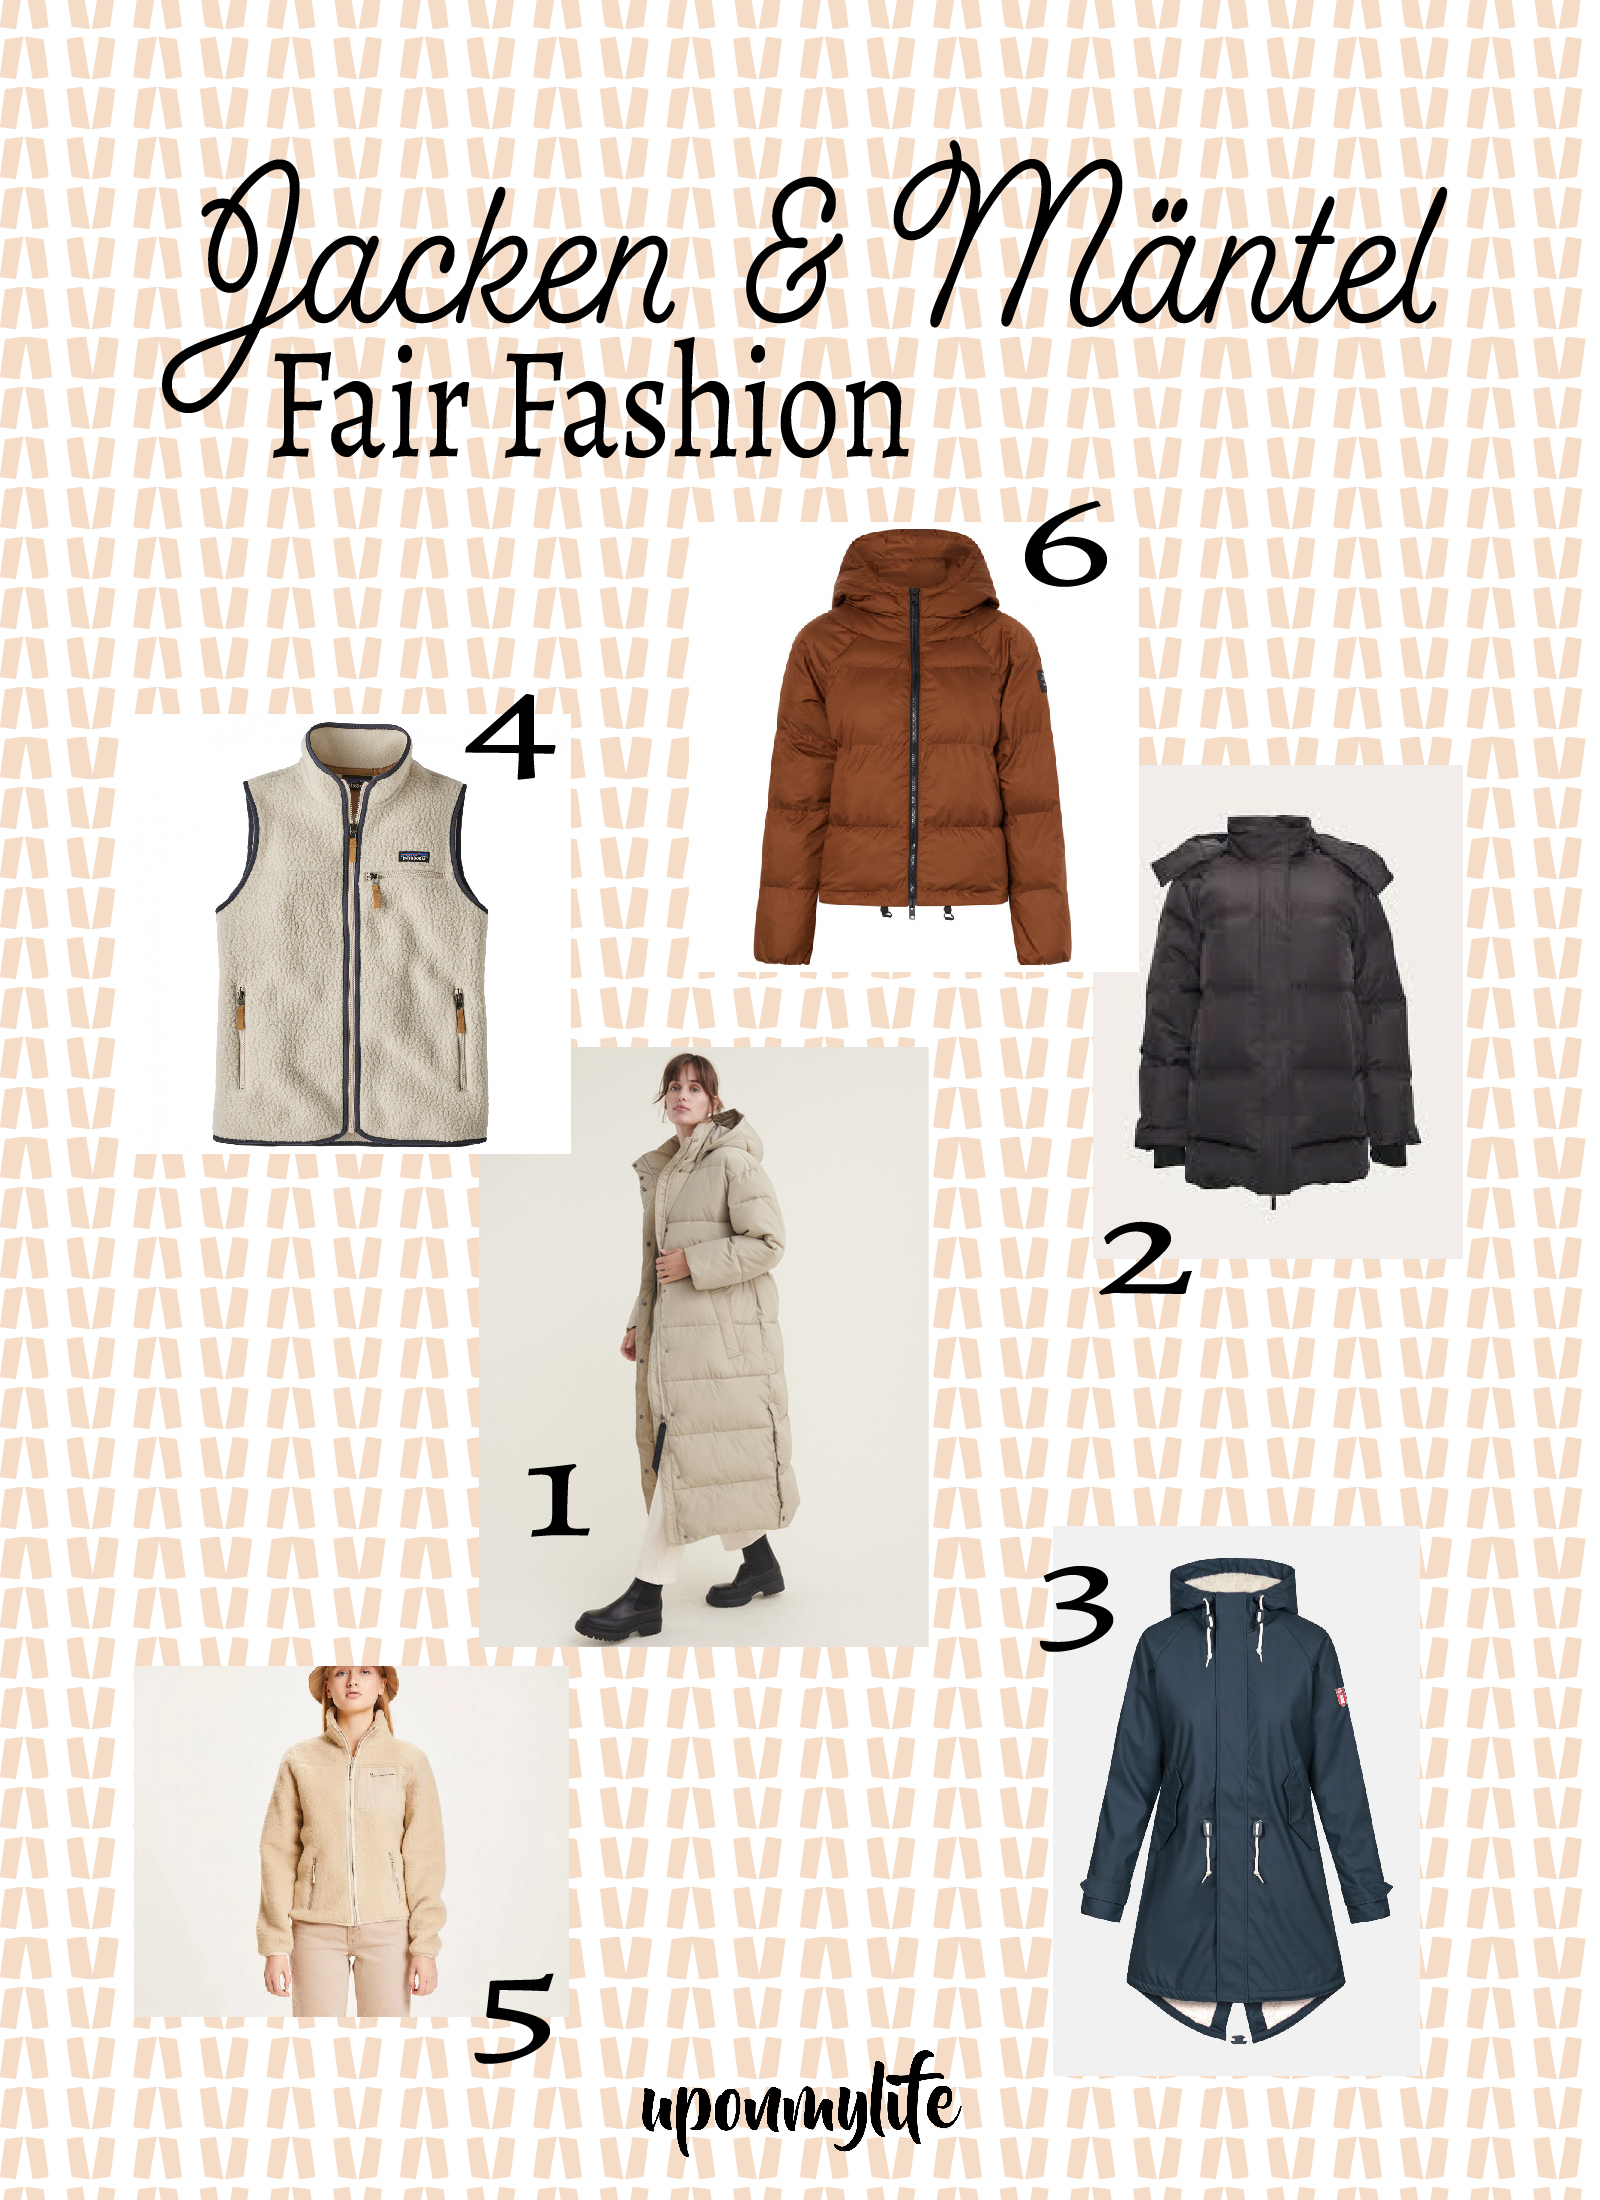 Herbst & Winter: Es wieder kühl und winterlich. 6 coole Fair Fashion Jacken und Mäntel habe ich euch zusammengestellt. Viel Spaß beim Stöbern.